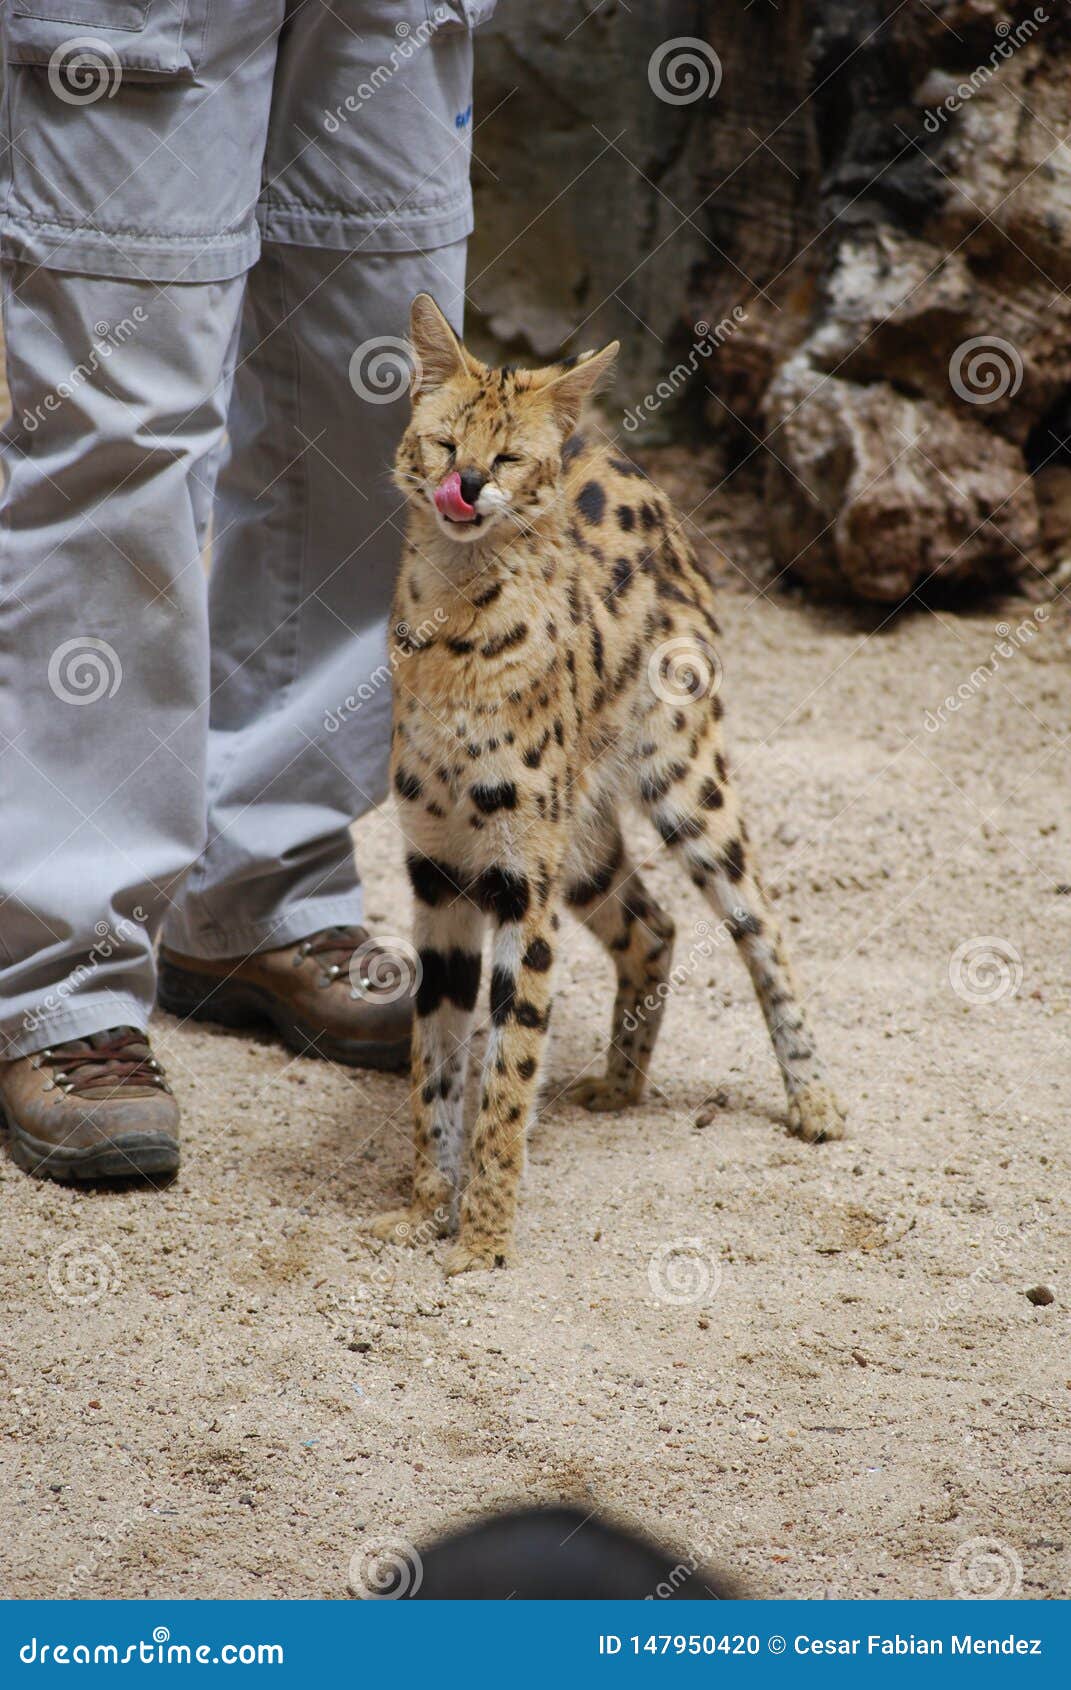 young cheetah licking